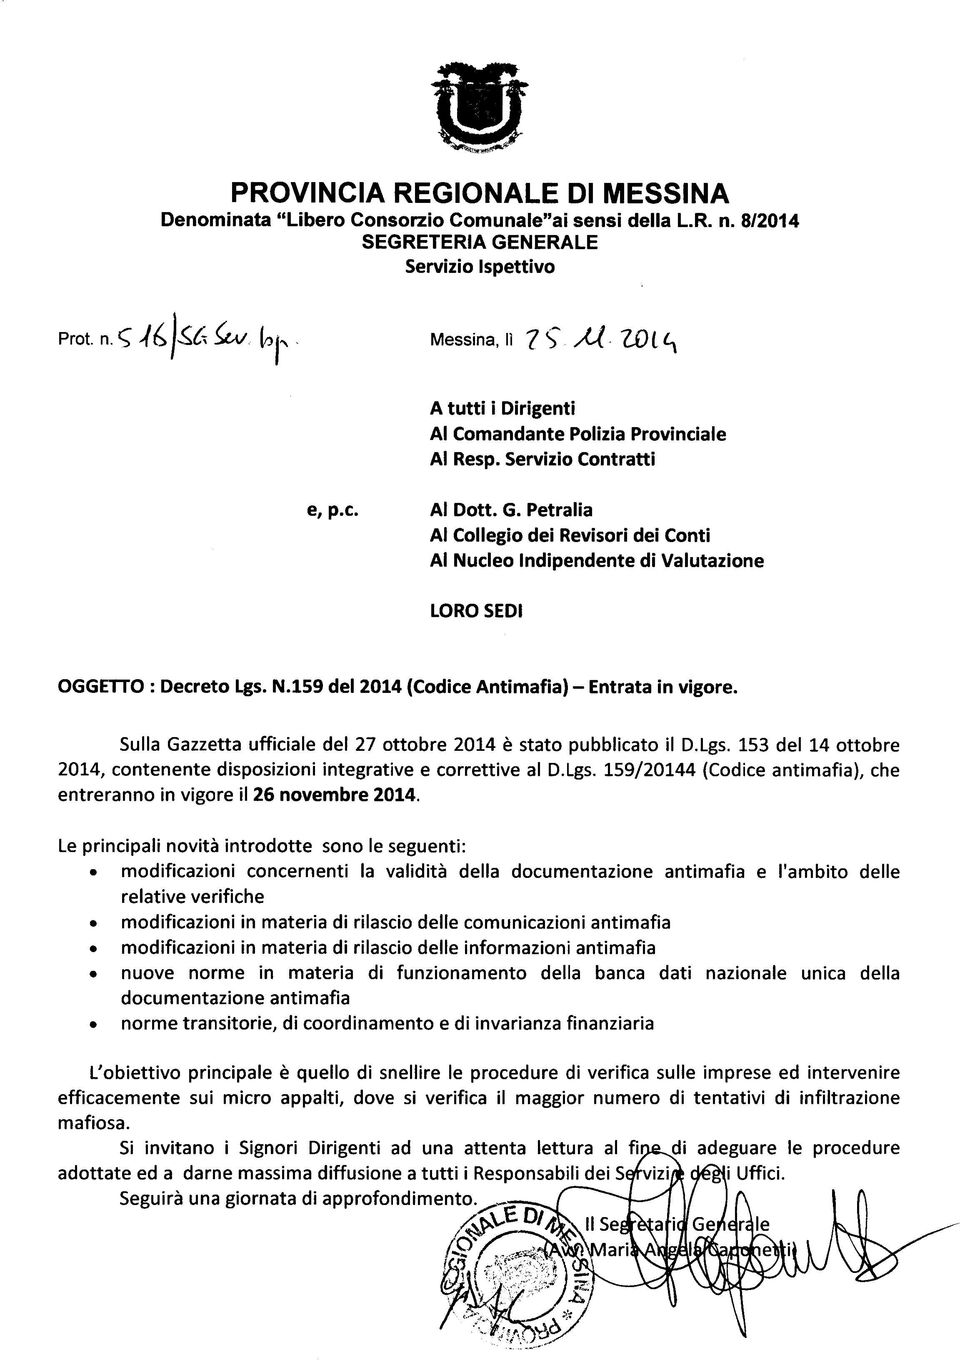 Petralia Al Collegio dei Revisori dei Conti Al Nucleo Indipendente di Valutazione LORO SEDI OGGETTO : Decreto Lgs. N.159 del 2014 (Codice Antimafia) - Entrata in vigore.